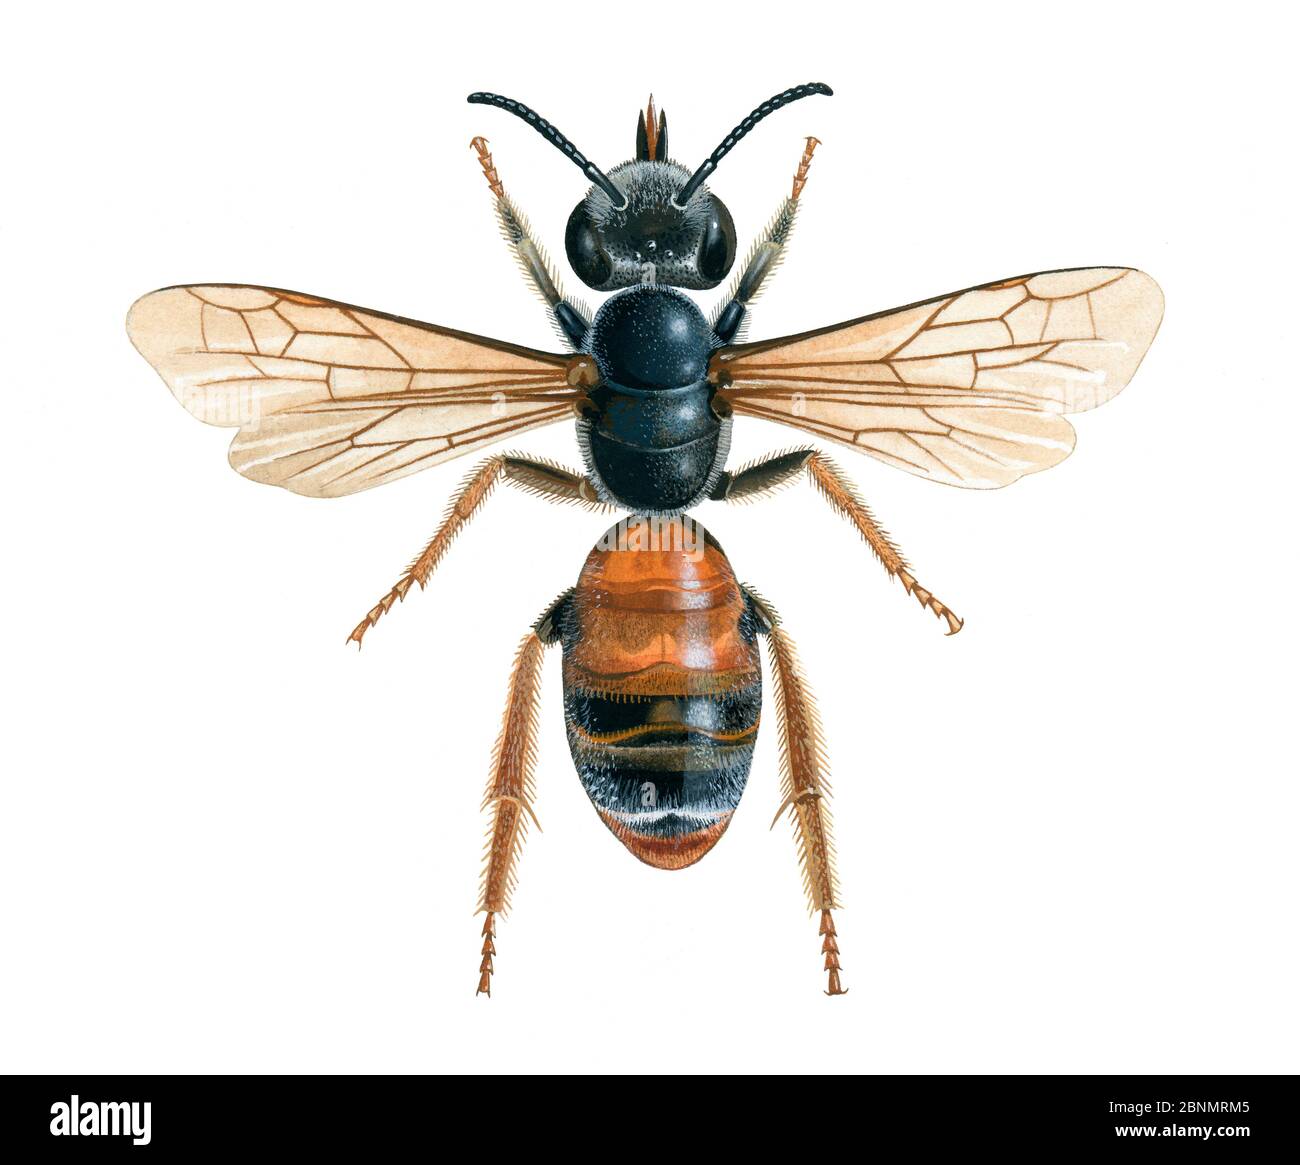 Illustration de l'abeille minière (Andena hattfiana) Banque D'Images